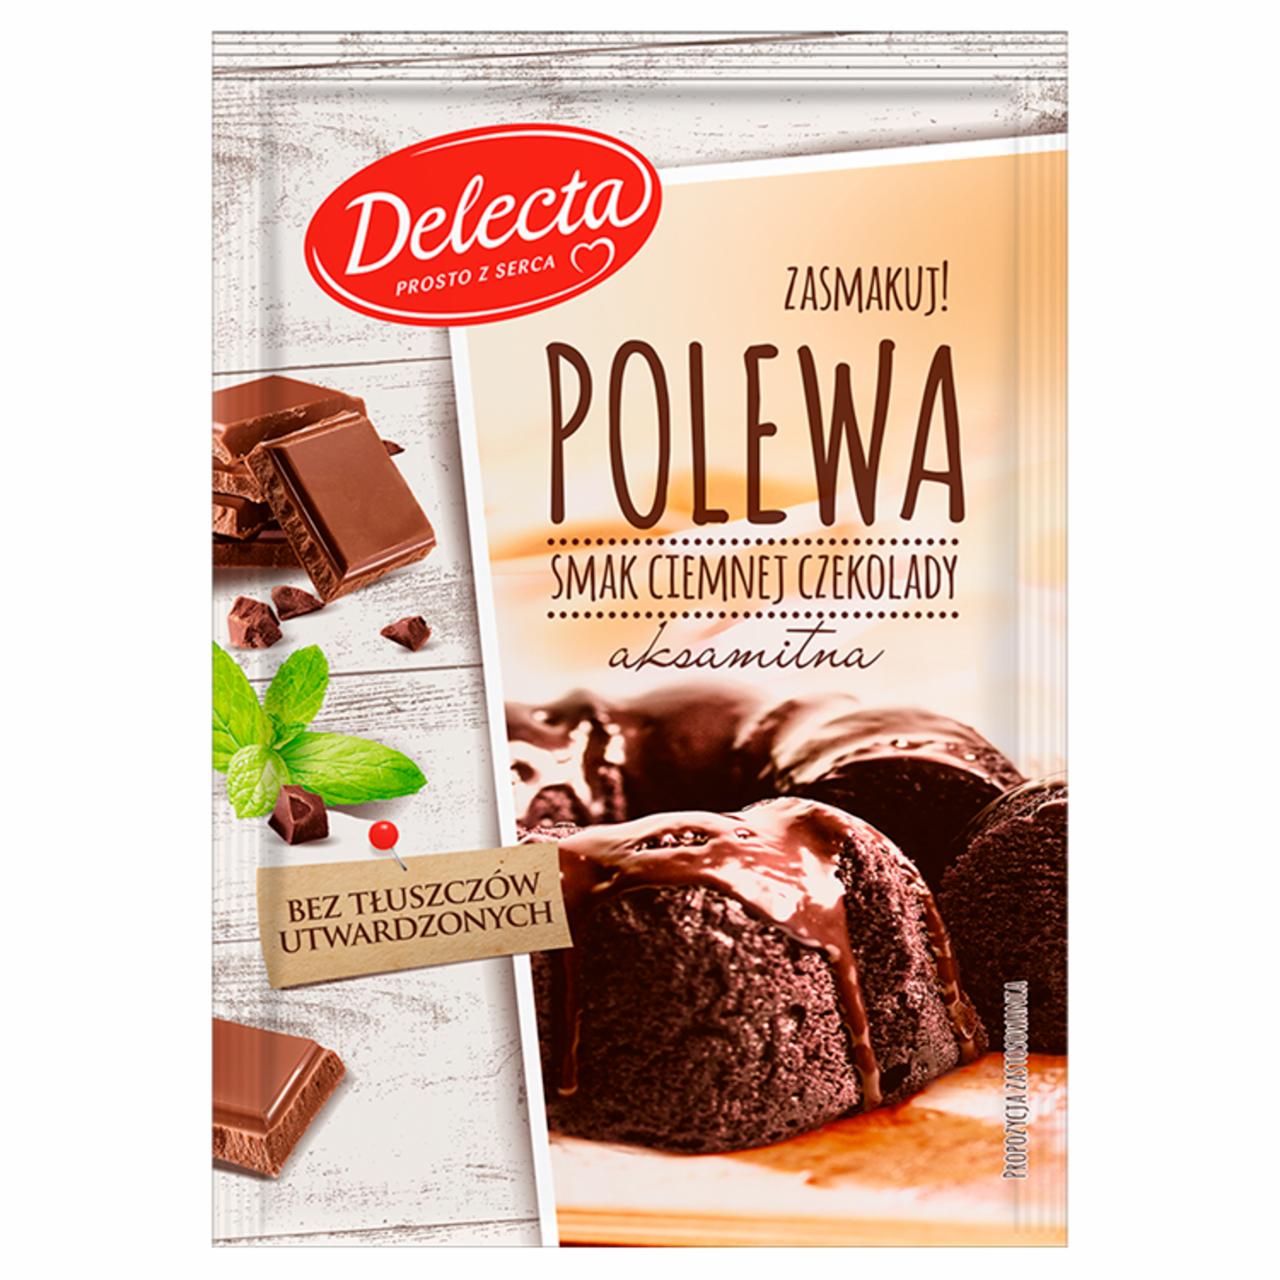 Zdjęcia - Delecta Polewa smak ciemnej czekolady 100 g